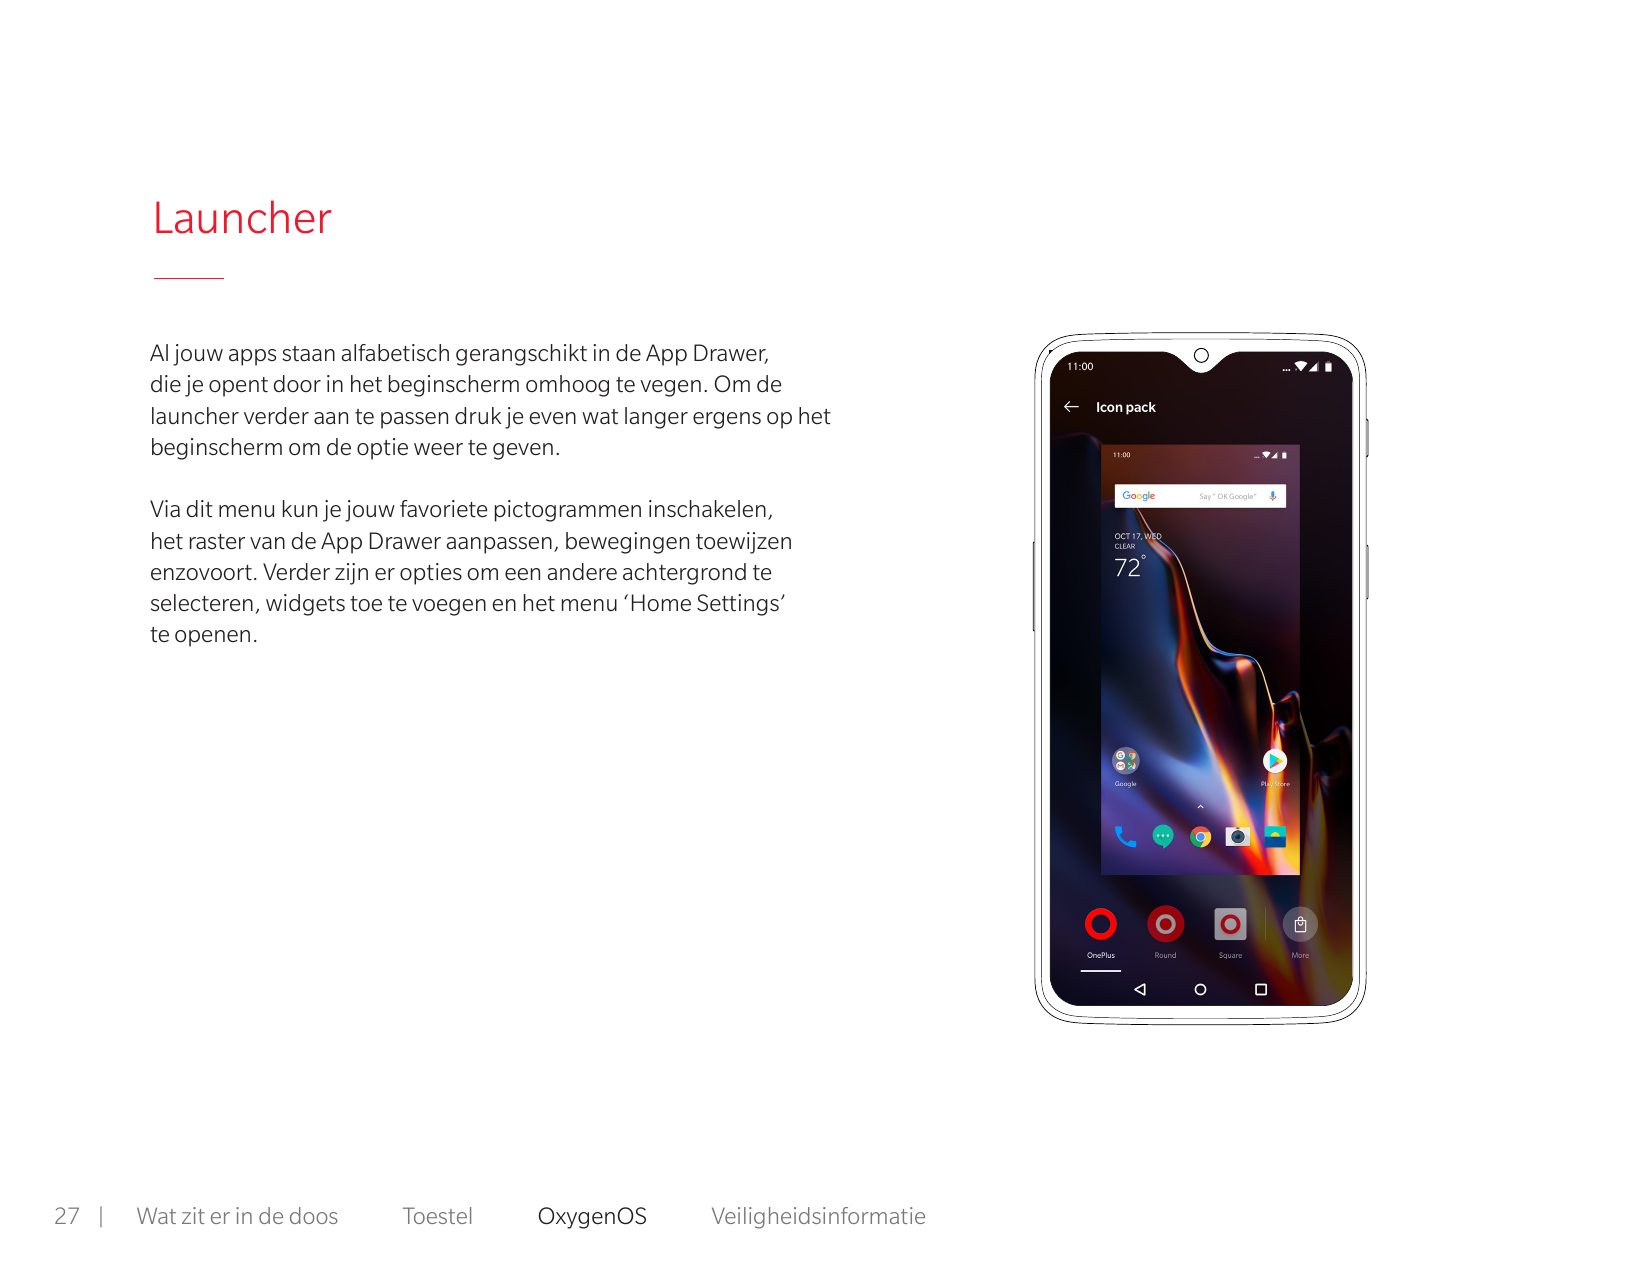 LauncherAl jouw apps staan alfabetisch gerangschikt in de App Drawer,die je opent door in het beginscherm omhoog te vegen. Om de